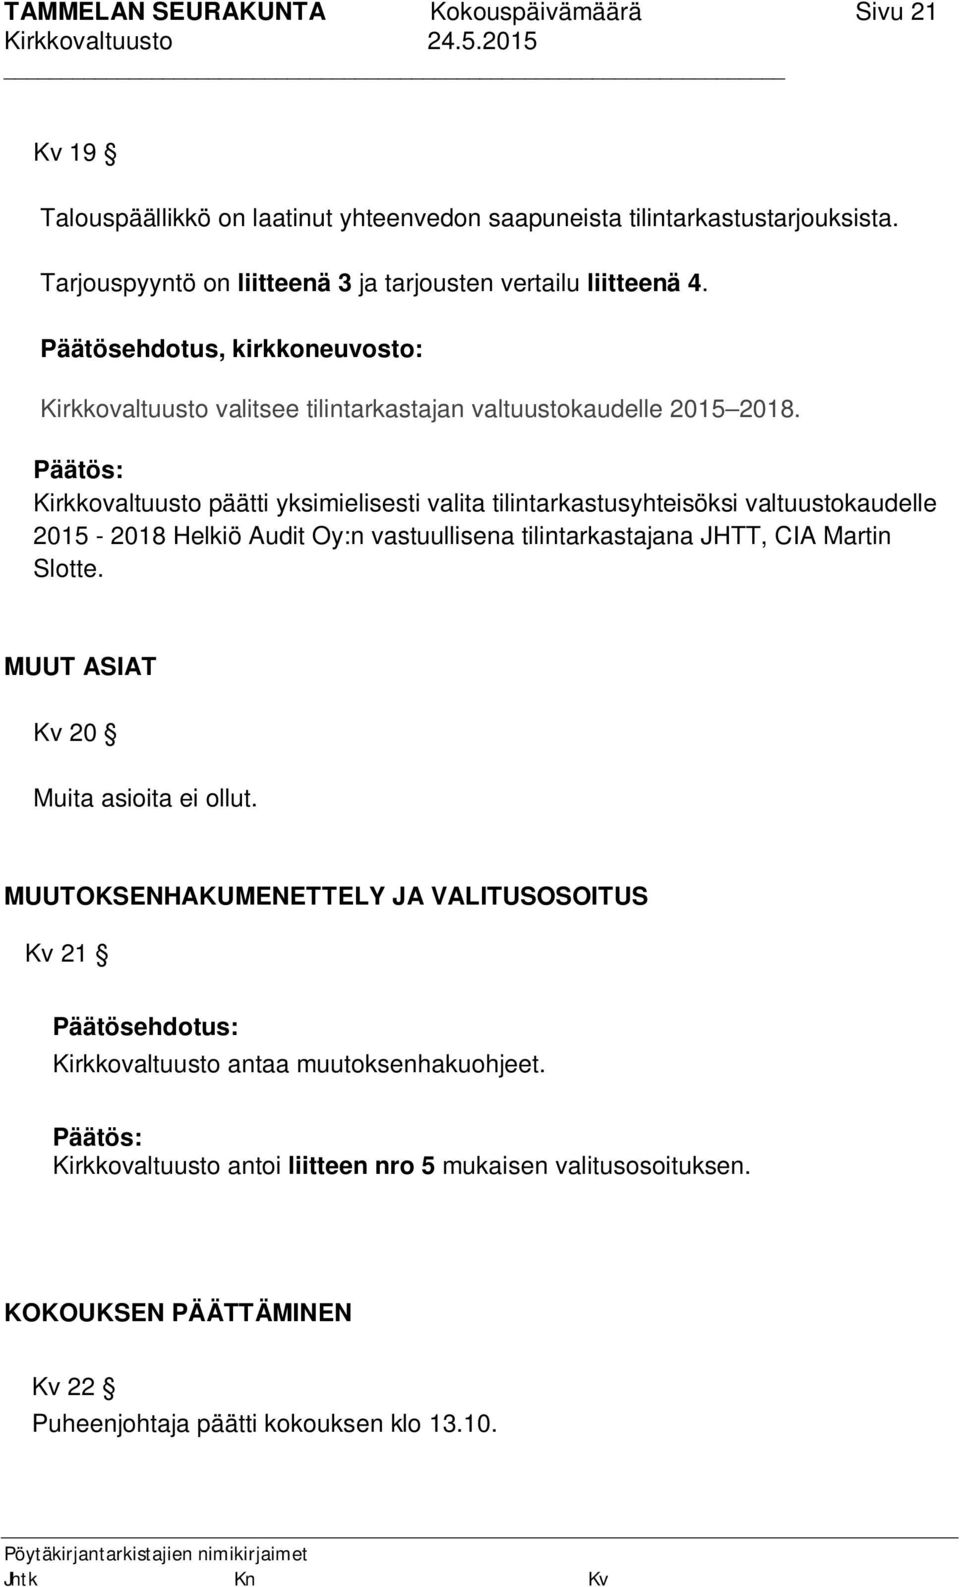 Kirkkovaltuusto päätti yksimielisesti valita tilintarkastusyhteisöksi valtuustokaudelle 2015-2018 Helkiö Audit Oy:n vastuullisena tilintarkastajana JHTT, CIA Martin Slotte.